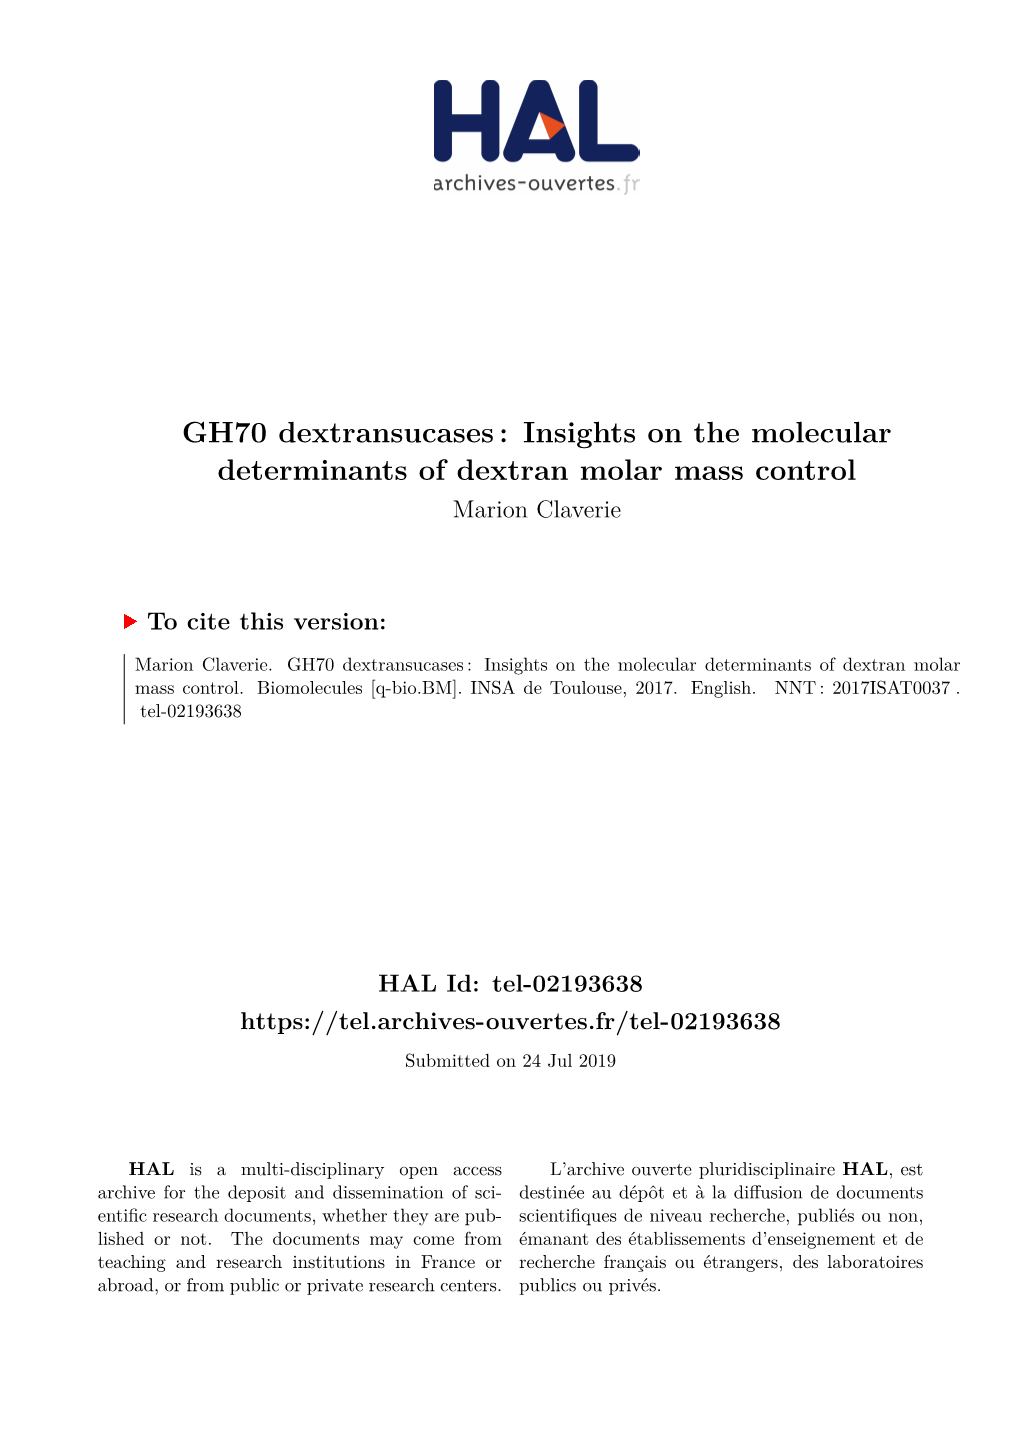 GH70 Dextransucases: Insights on the Molecular Determinants of Dextran